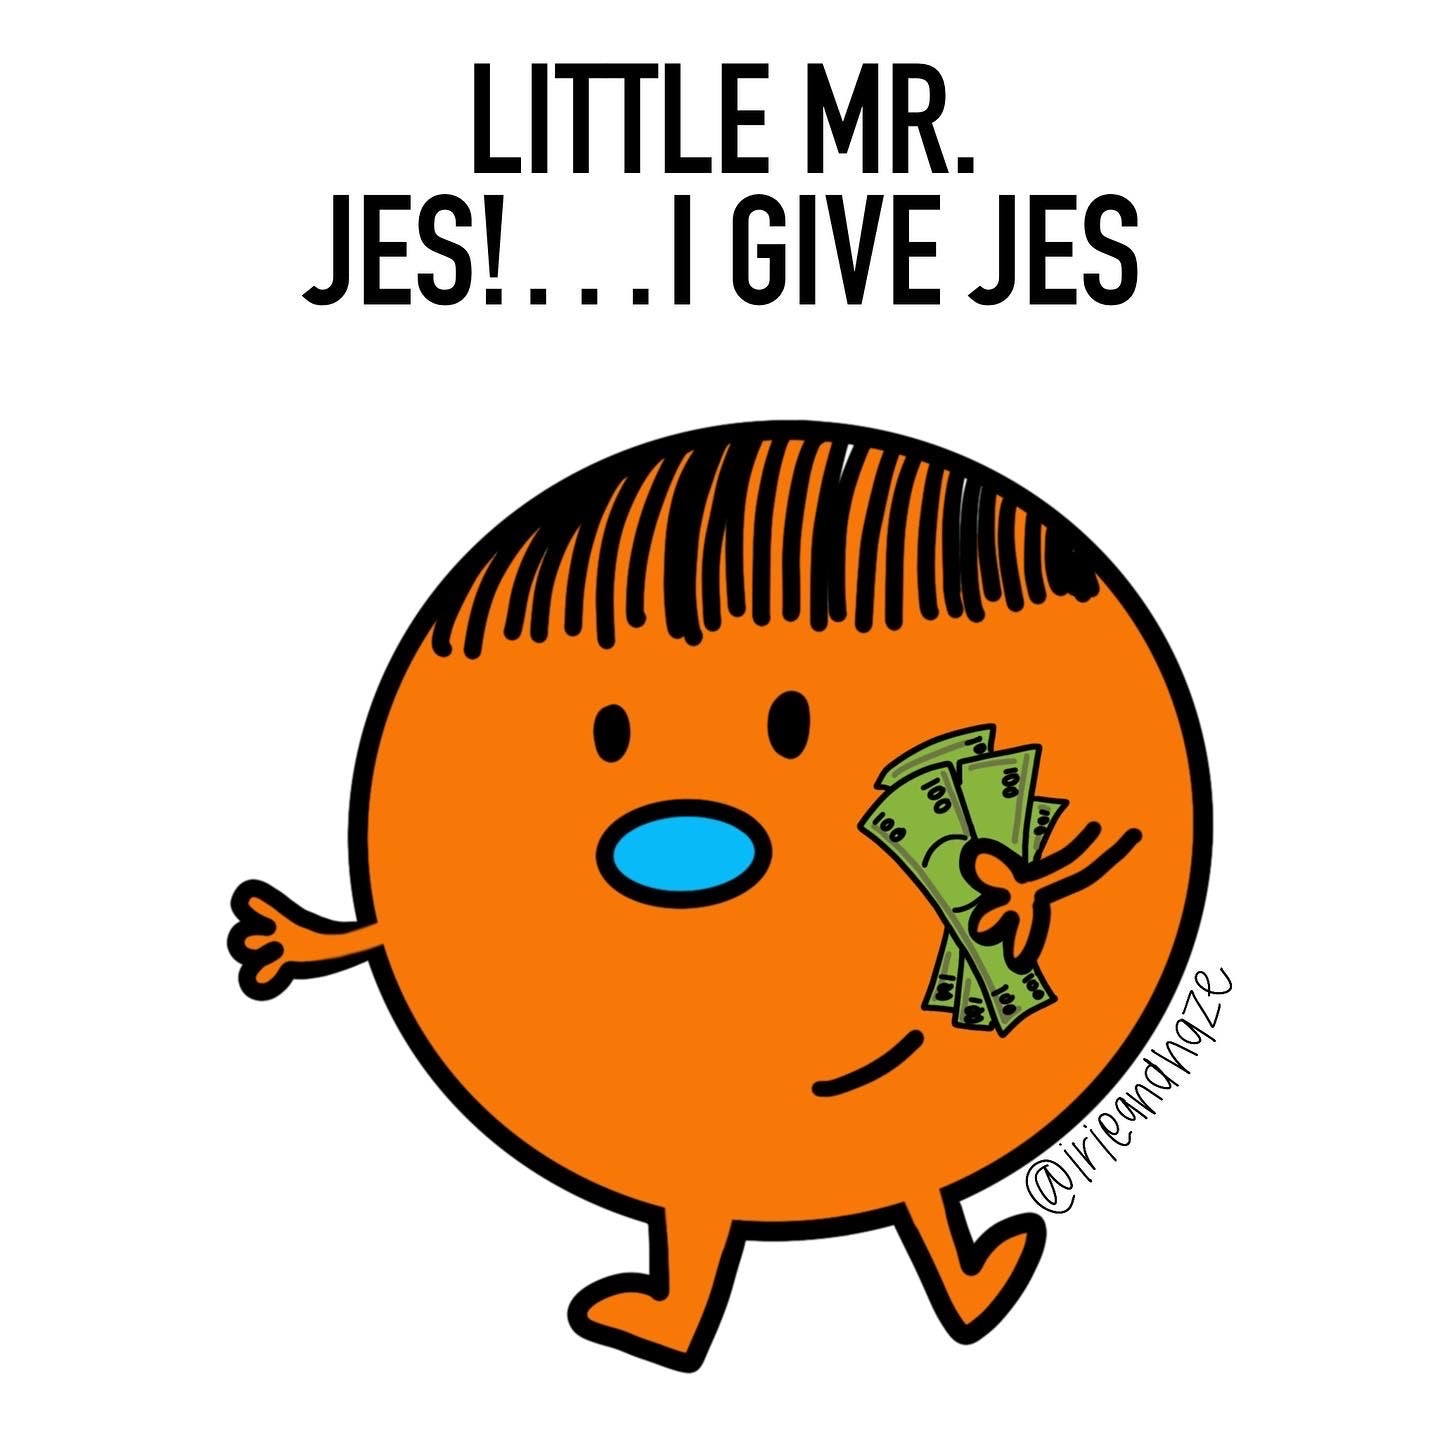 Give Jes sticker